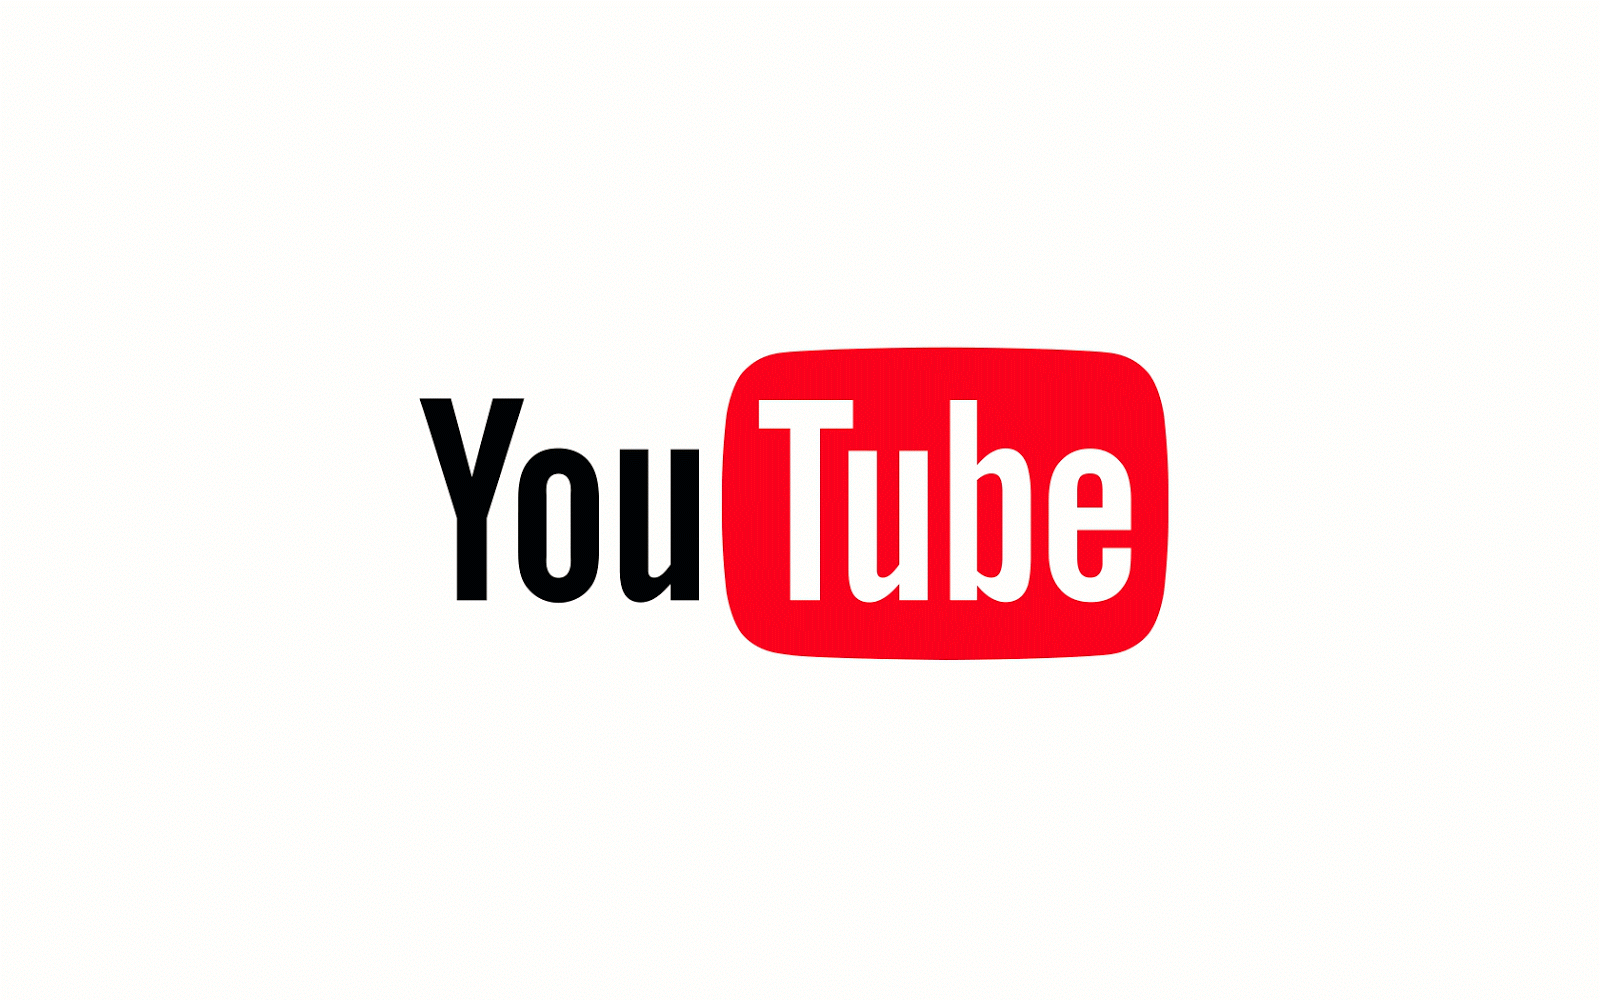 Esto es Google: Una nueva apariencia de YouTube que se adapta a ti